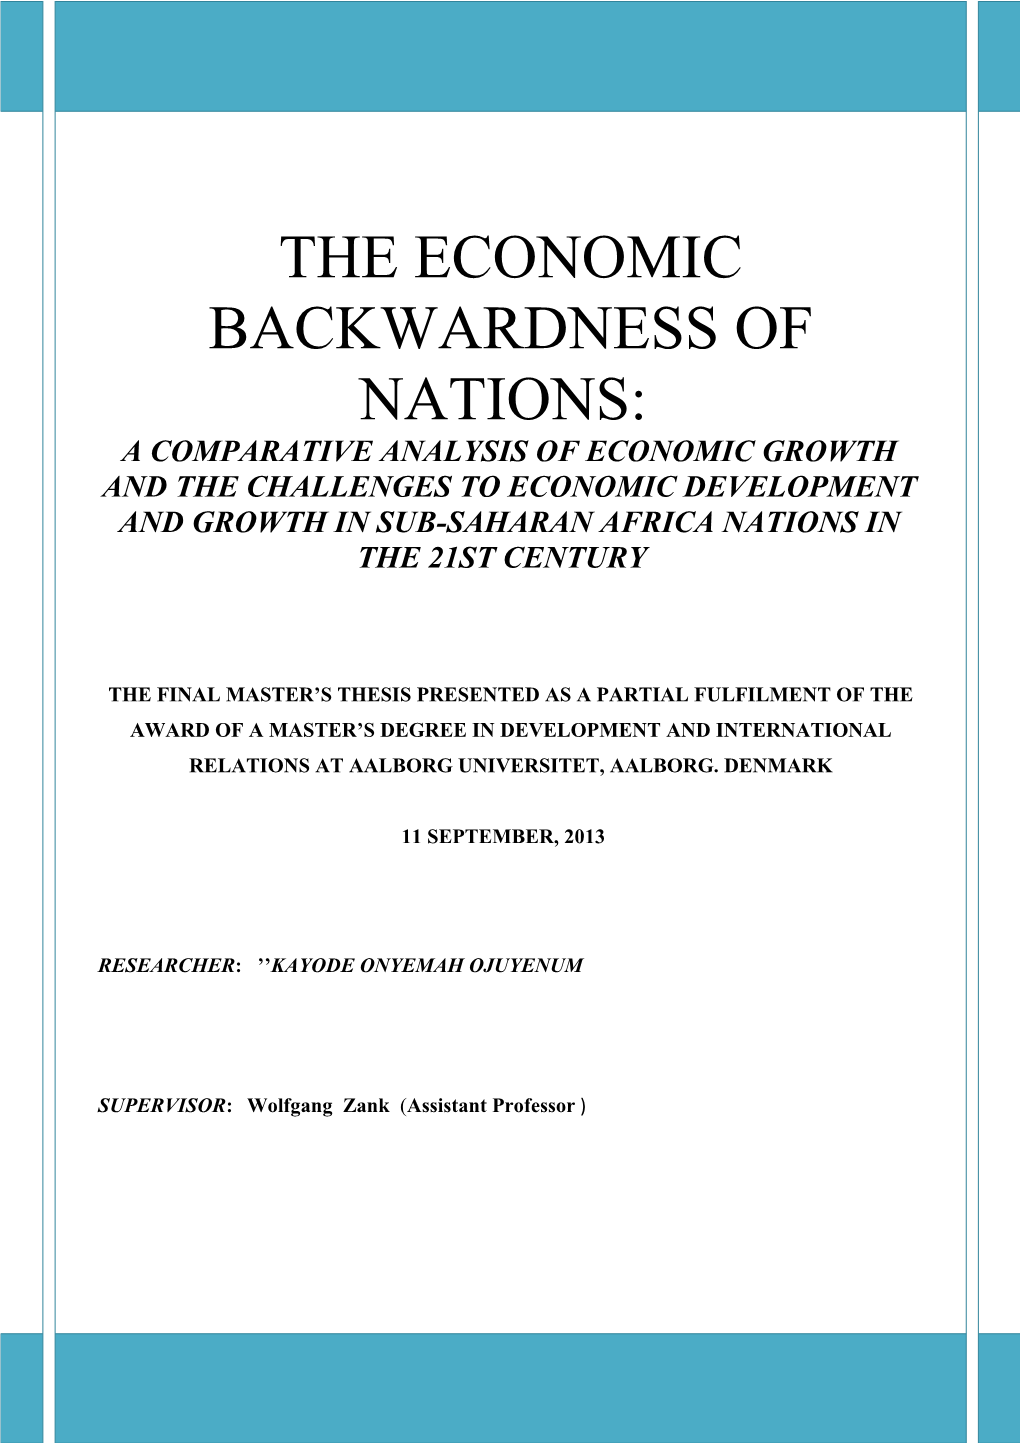 The Economic Backwardness of Nations